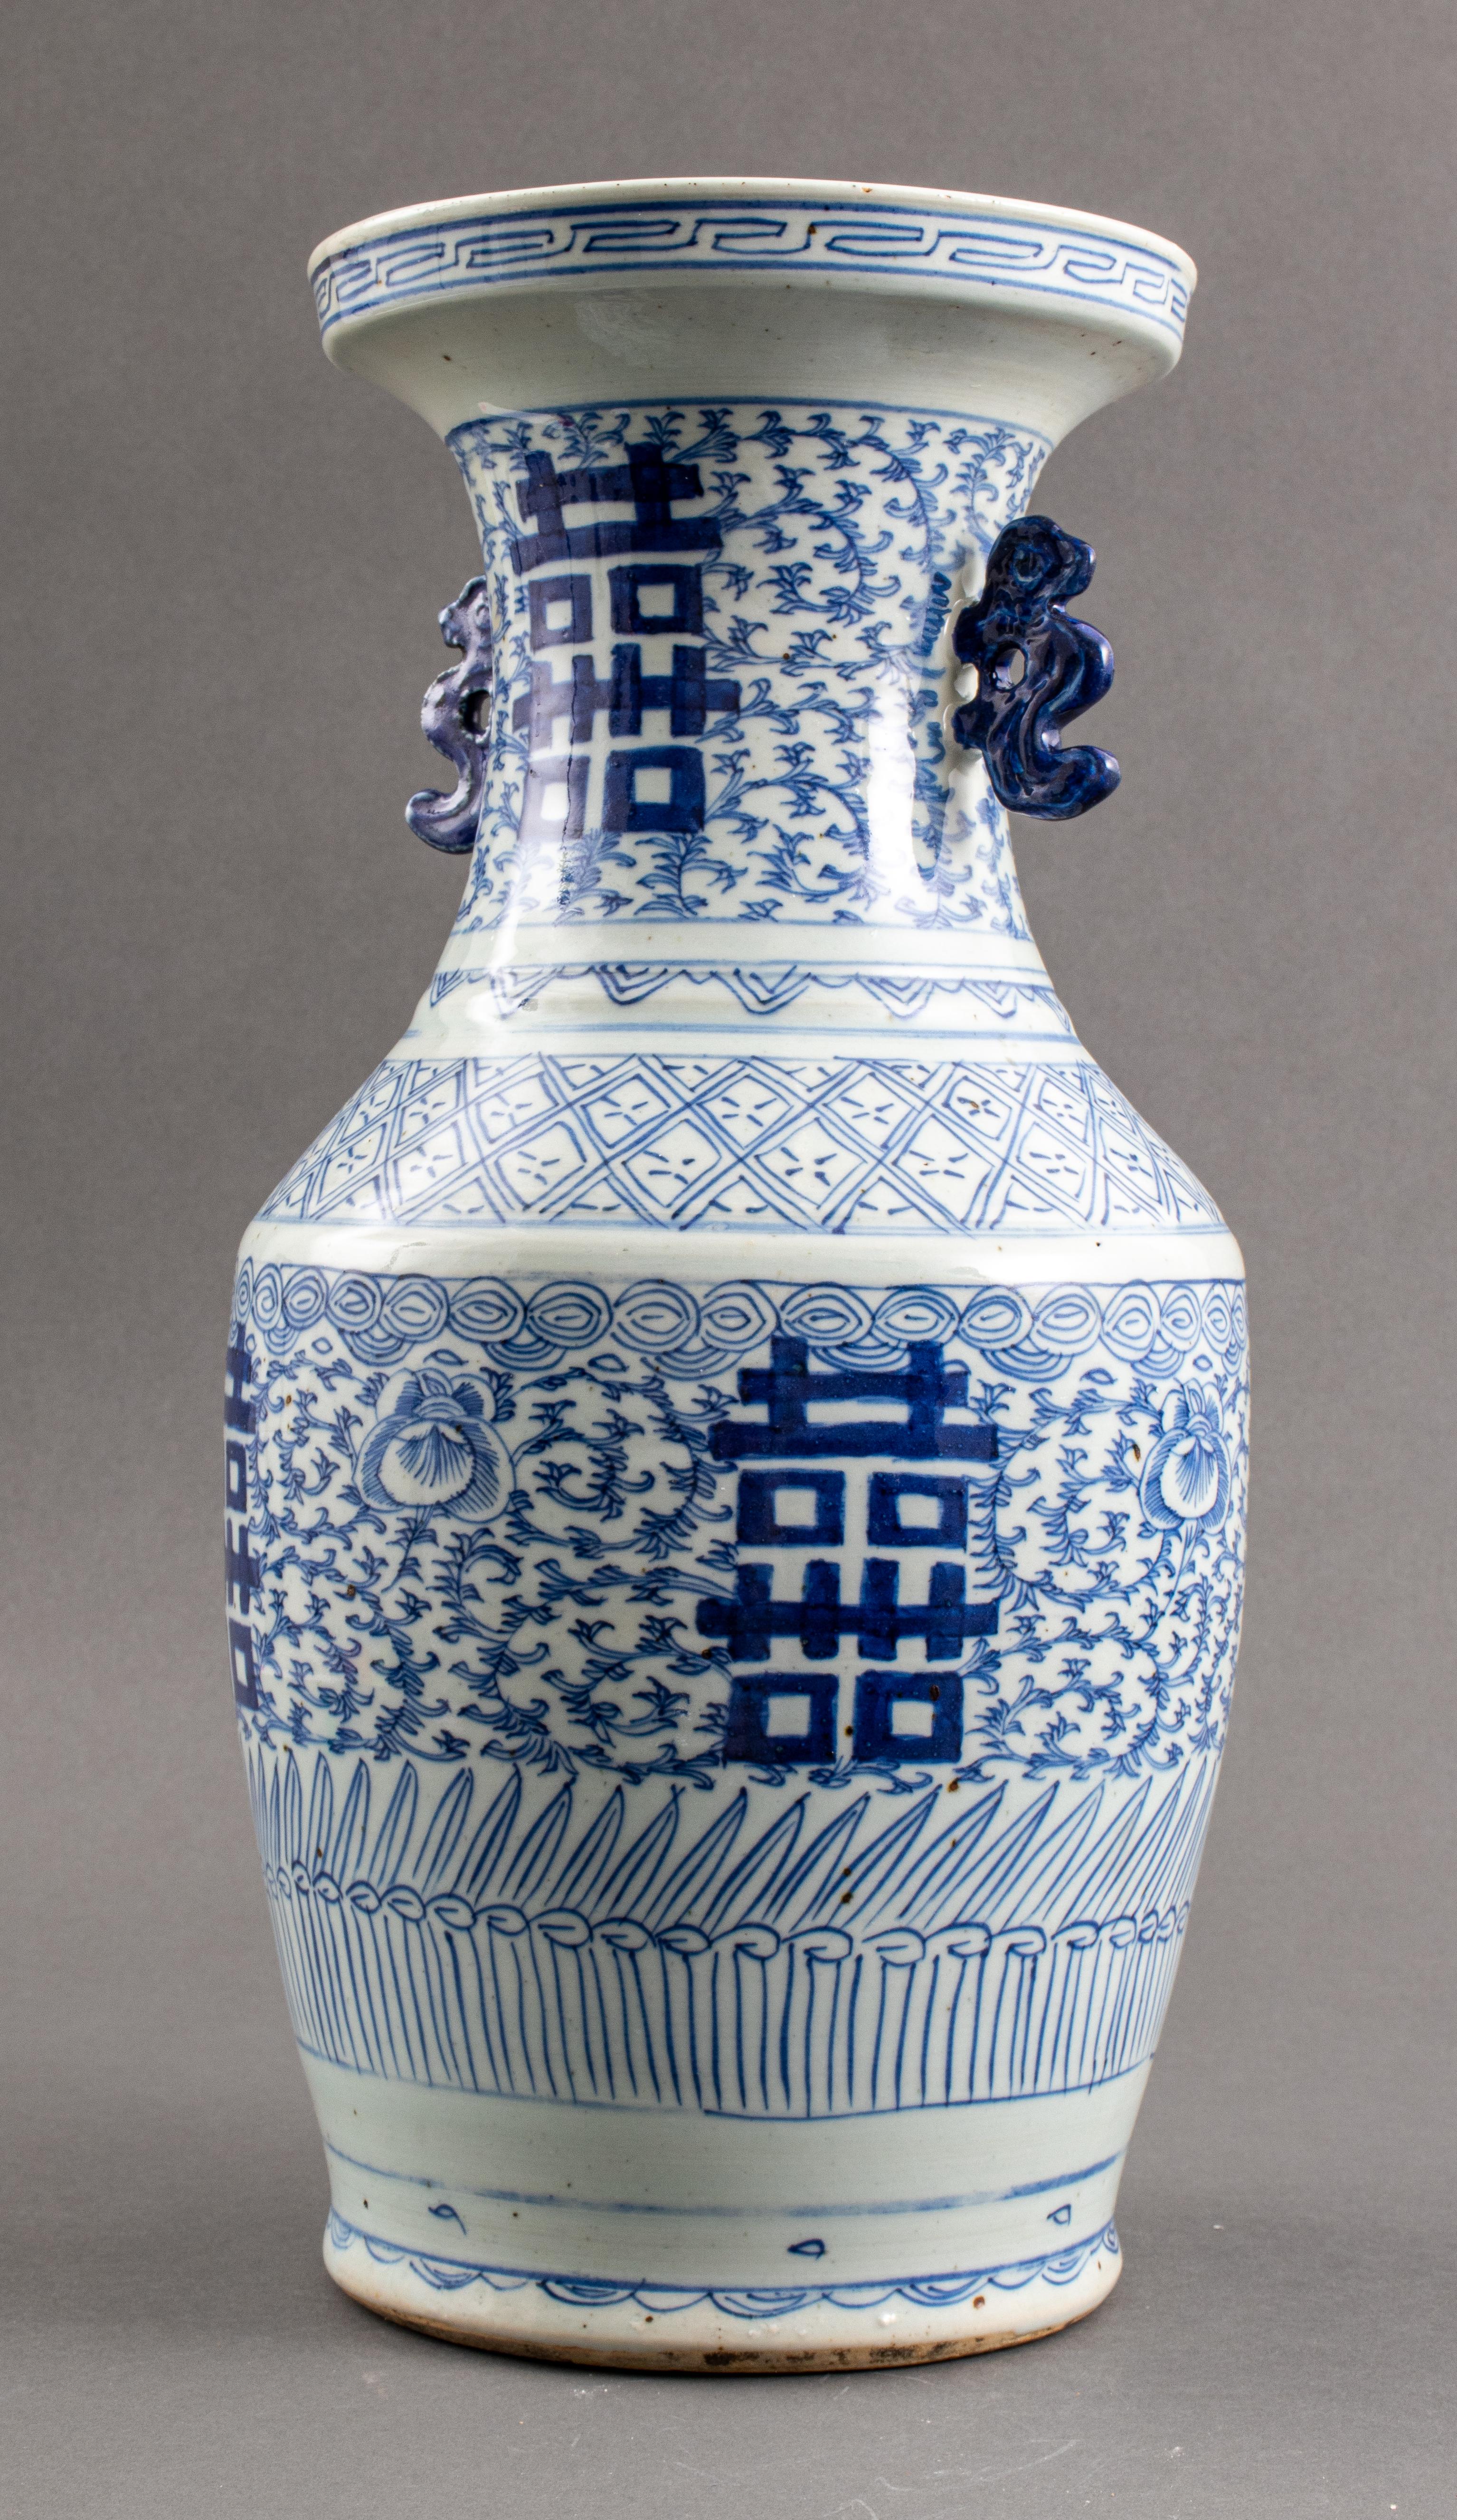 Chinesische Vase aus blauem und weißem Porzellan, handbemalt mit doppelten Glückssymbolen auf blattförmigem Grund, mit zwei figuralen Tierhenkeln, ungemarkt. 
Maße: 17,4